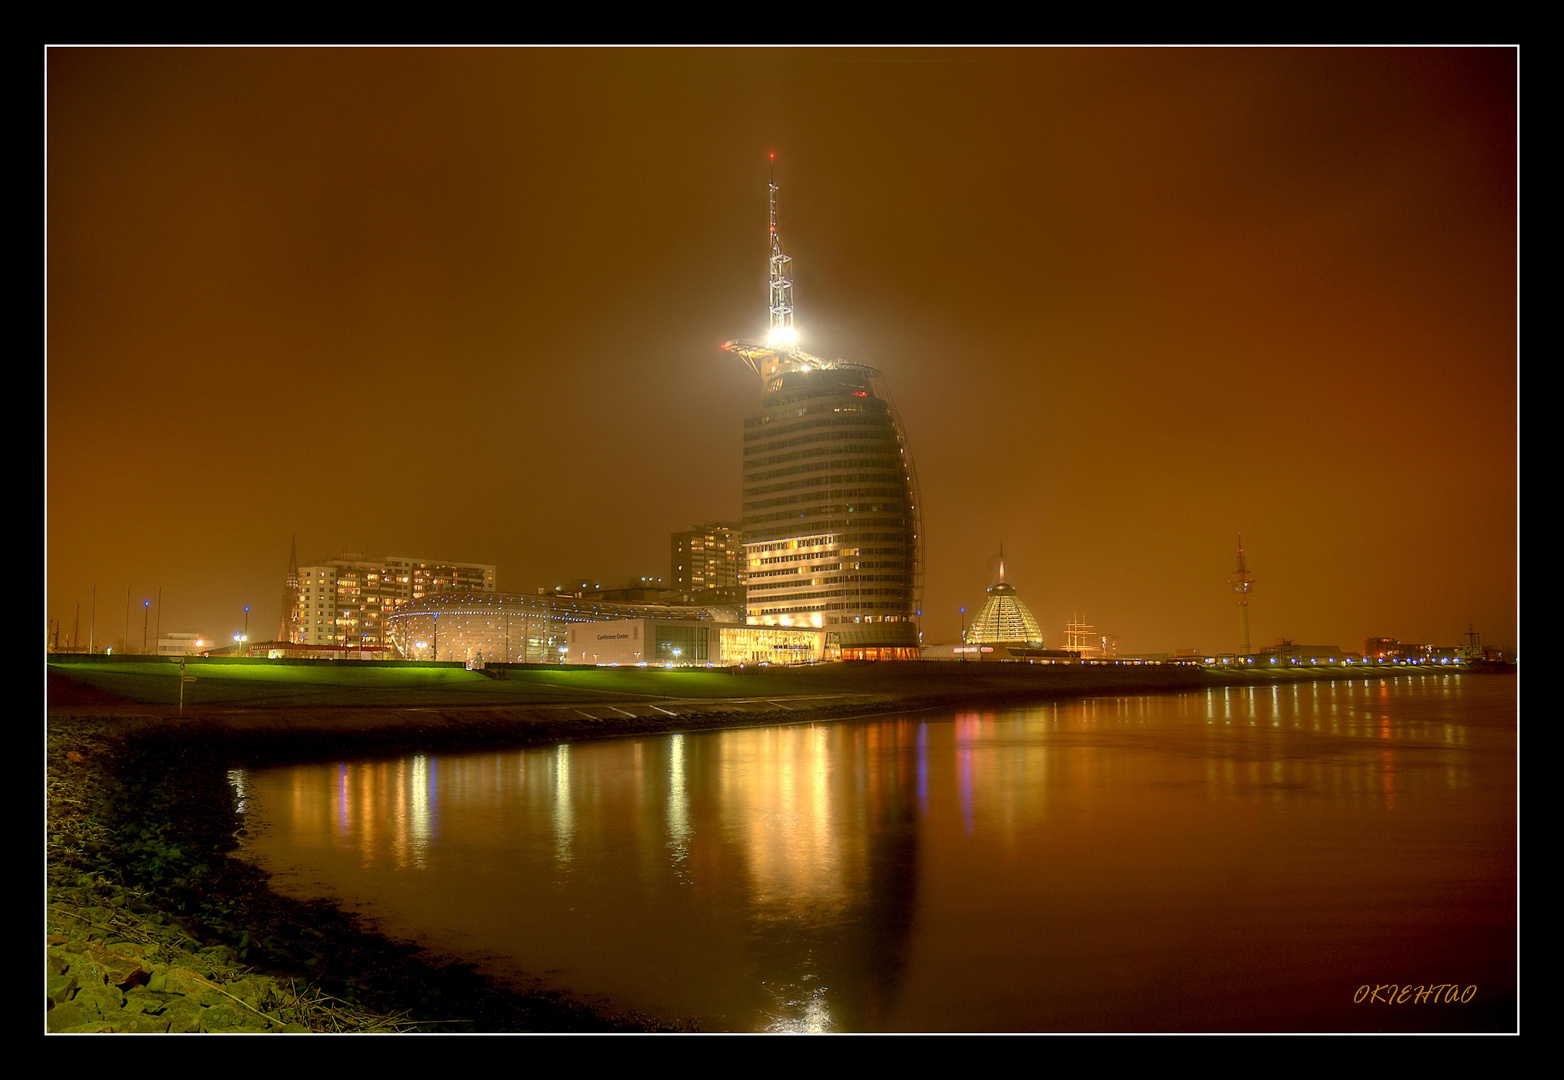 Bremerhaven bei Nacht